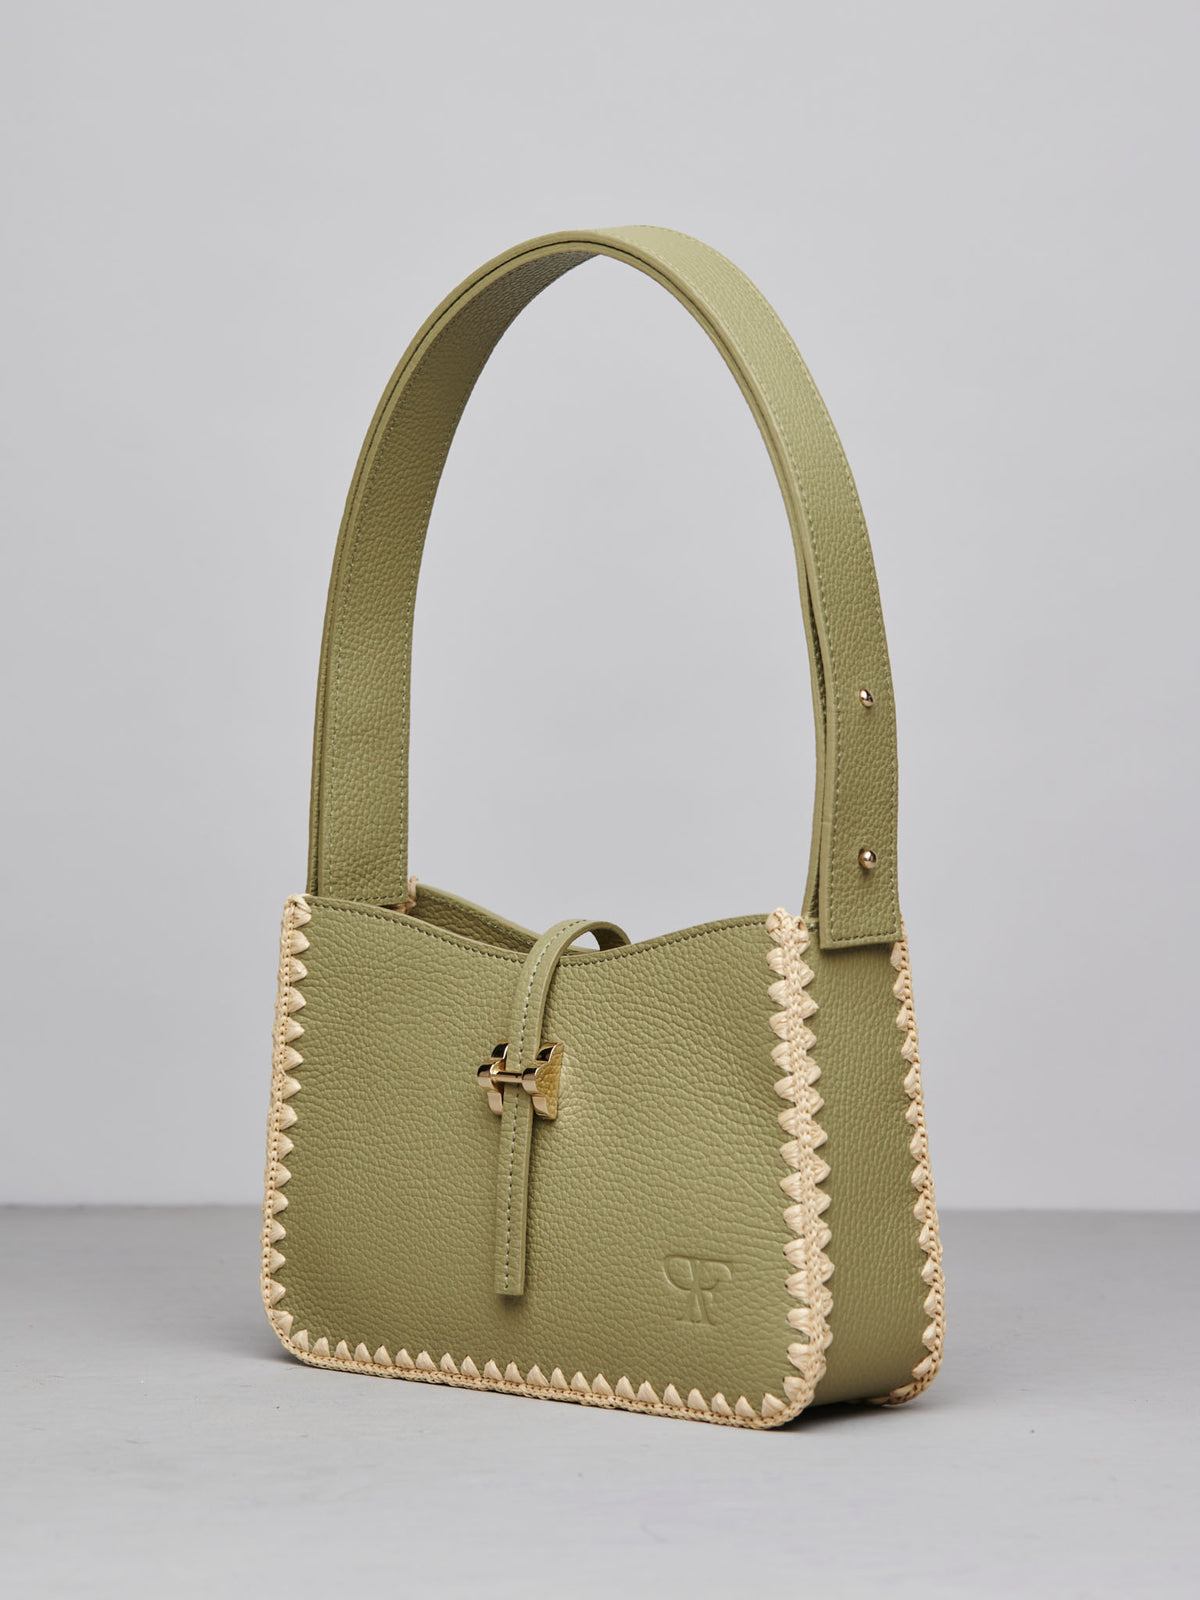 Jane Handbag in Olive